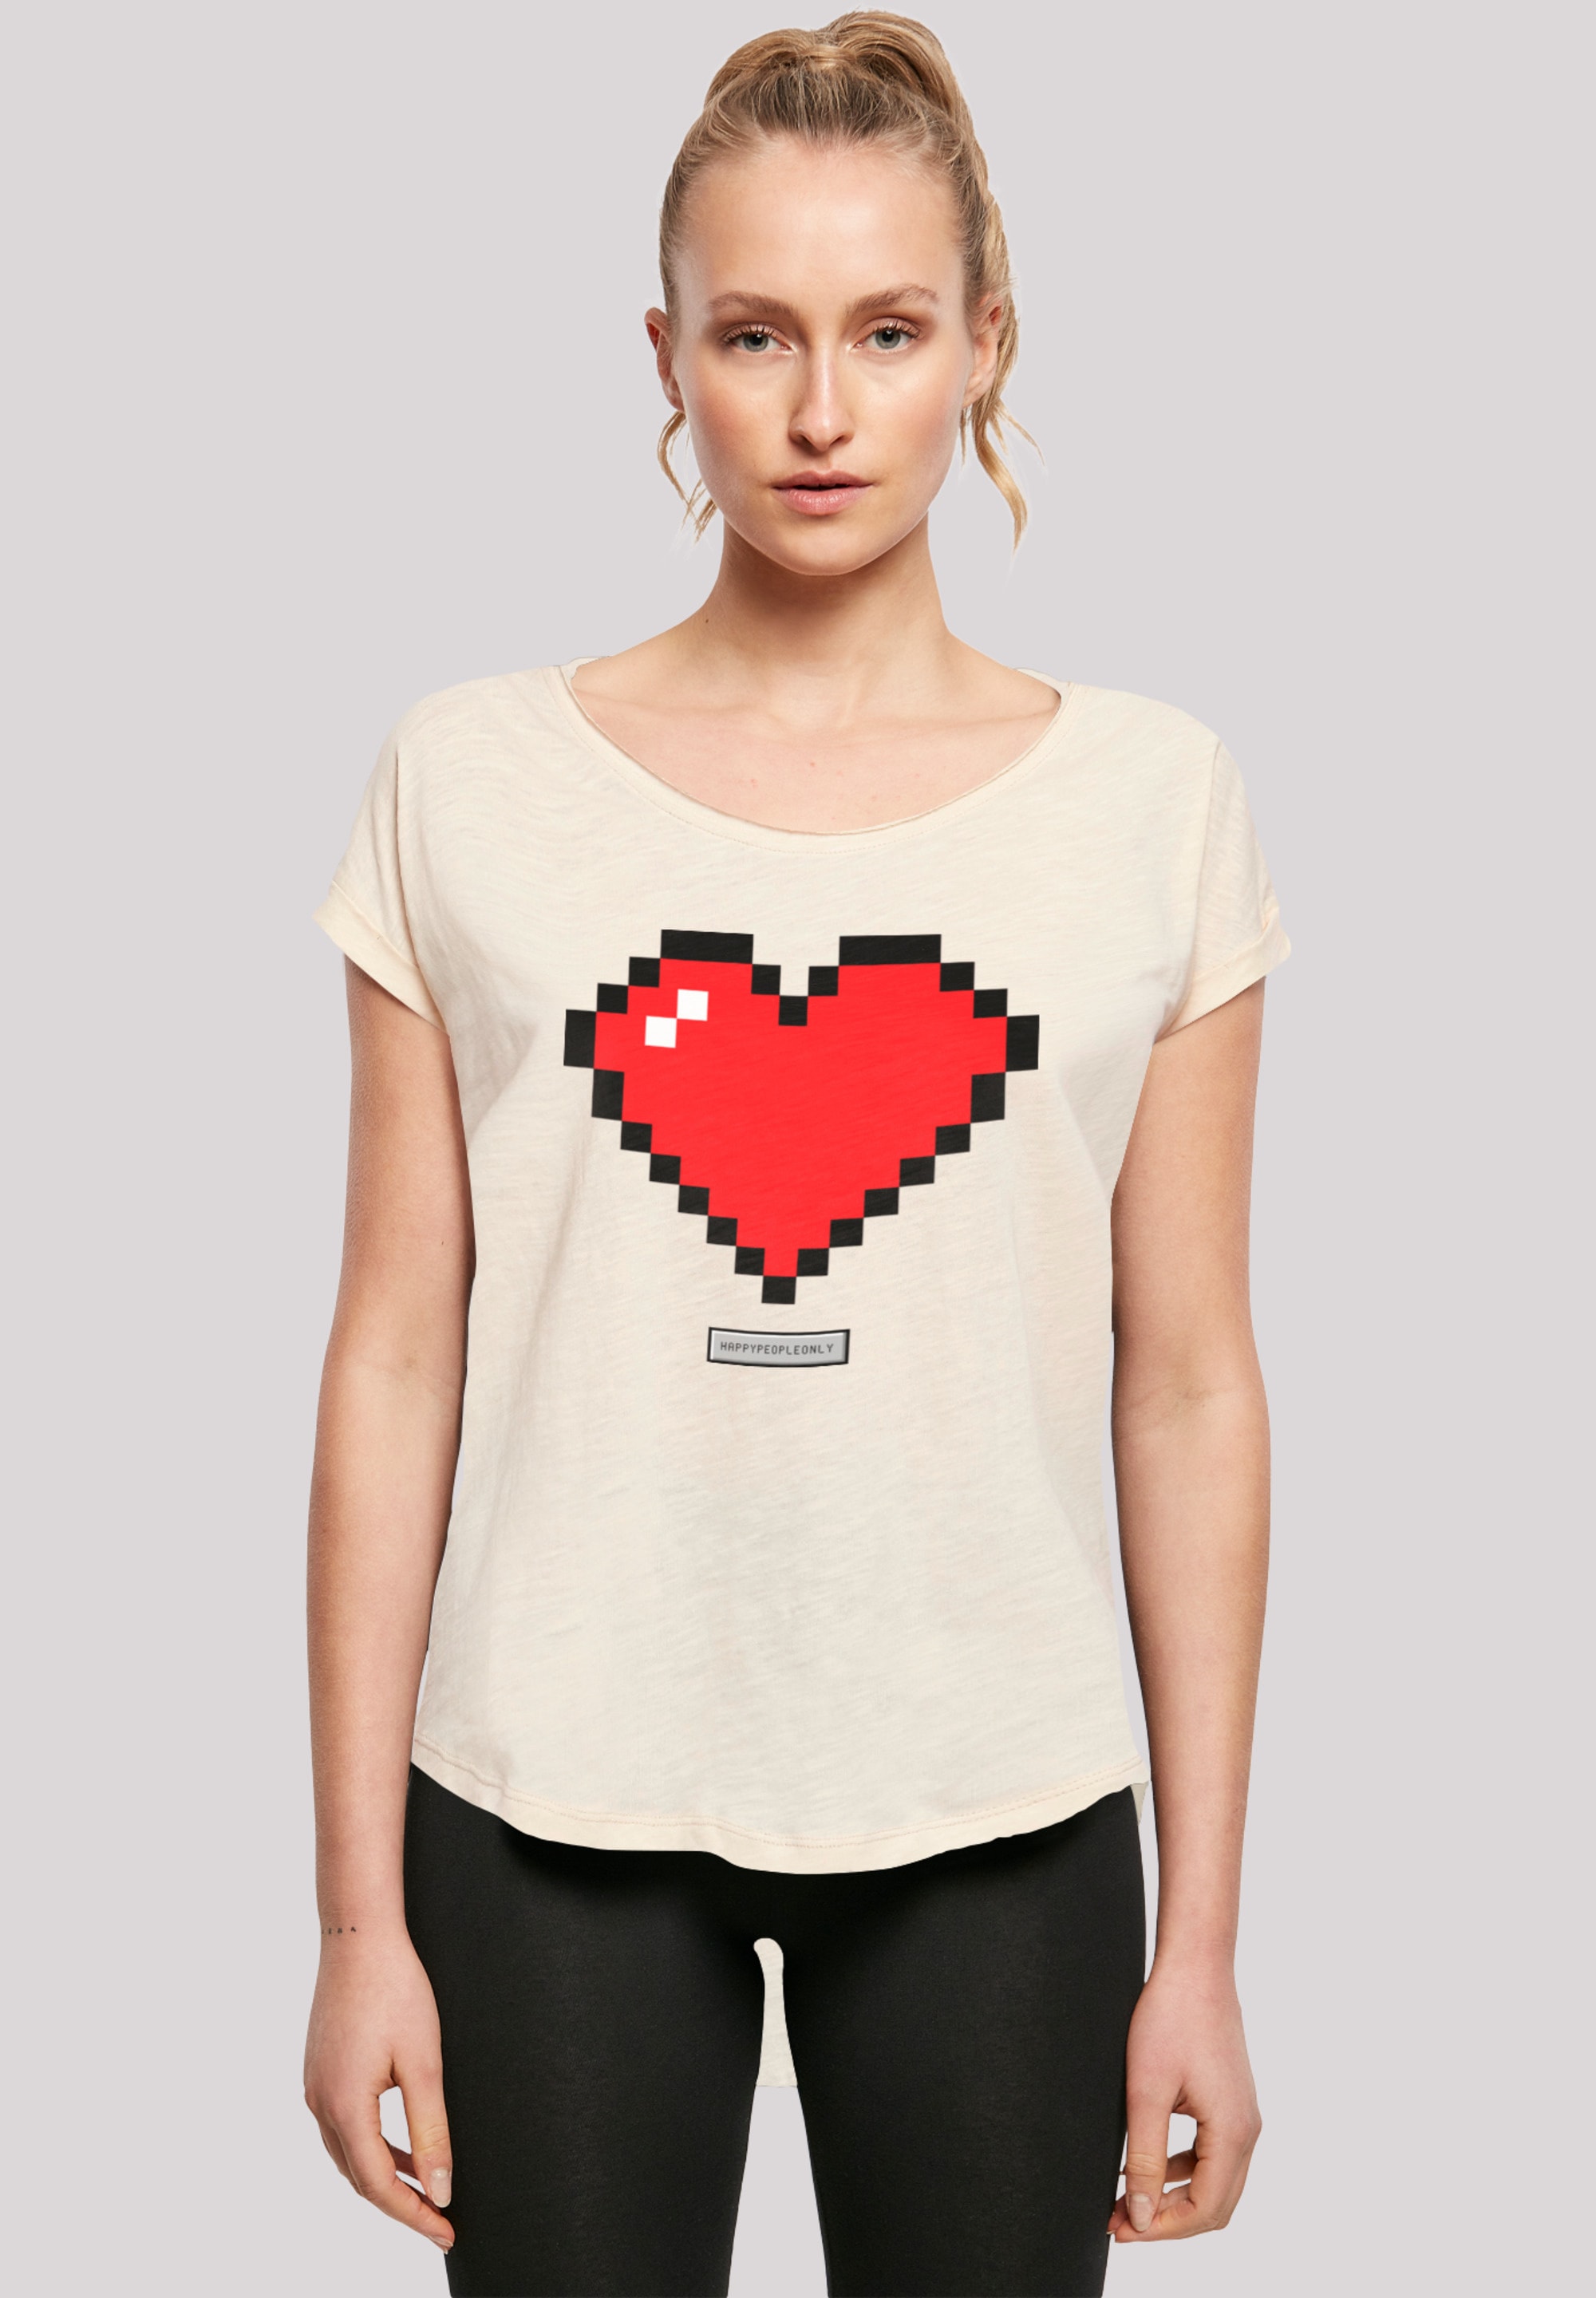 F4NT4STIC | Good Vibes T-Shirt für People«, Herz »Pixel Happy kaufen Print BAUR